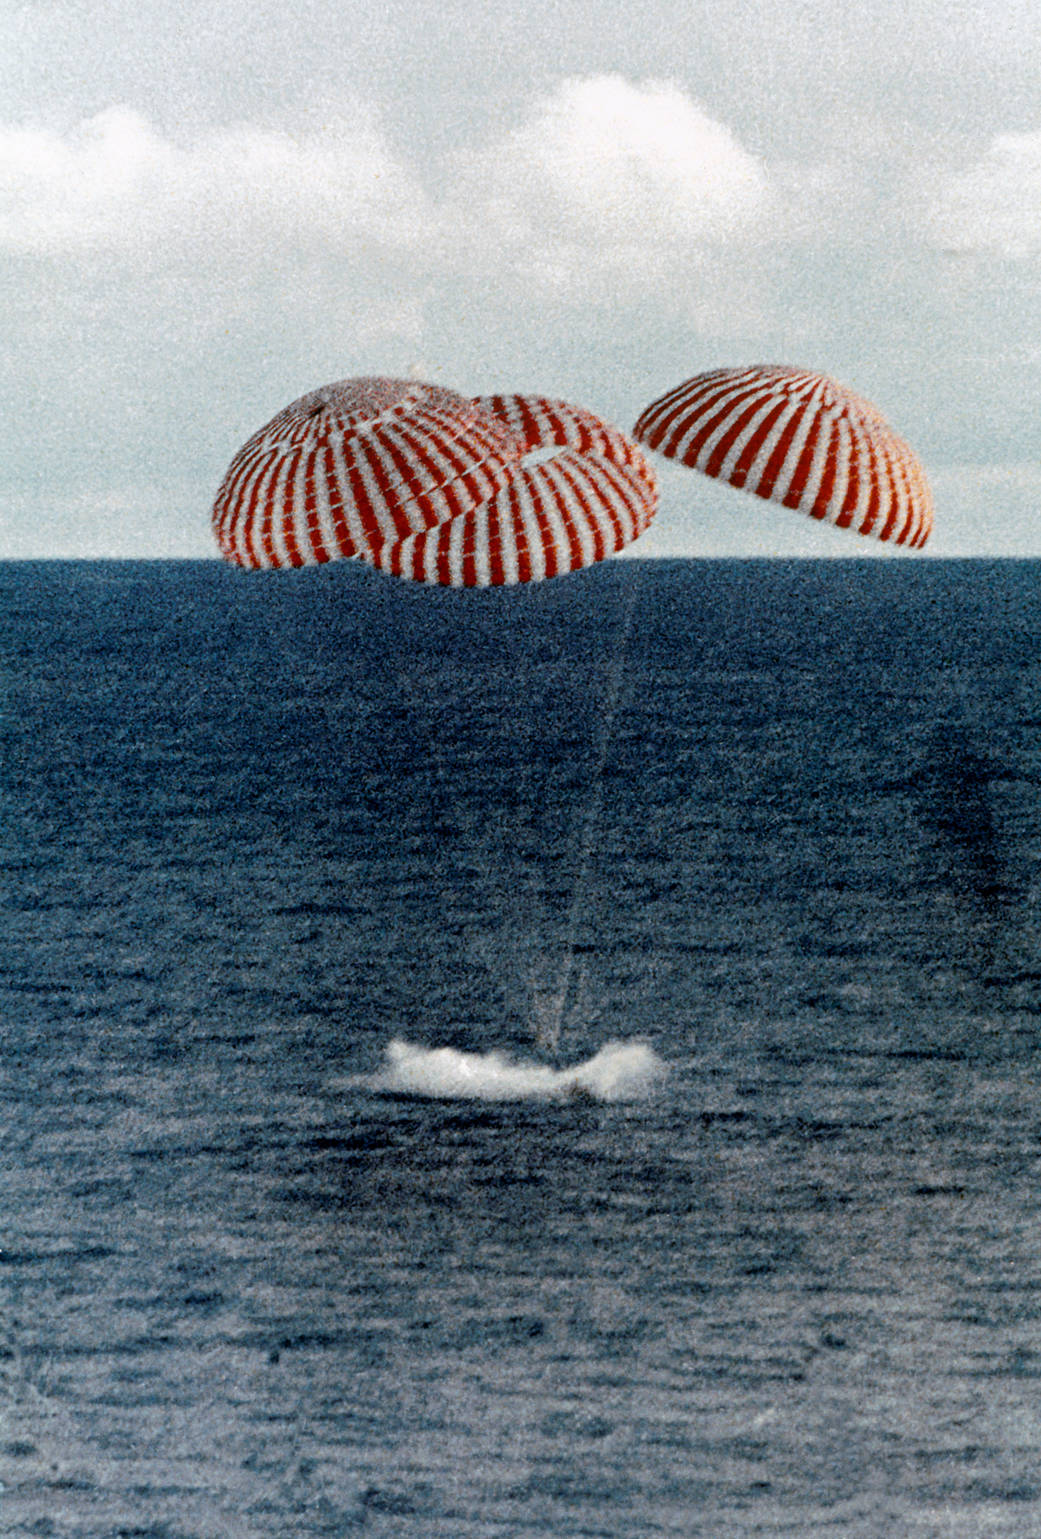 Splashdown of Apollo 13 Command Module in South Pacific—April 17, 1970.